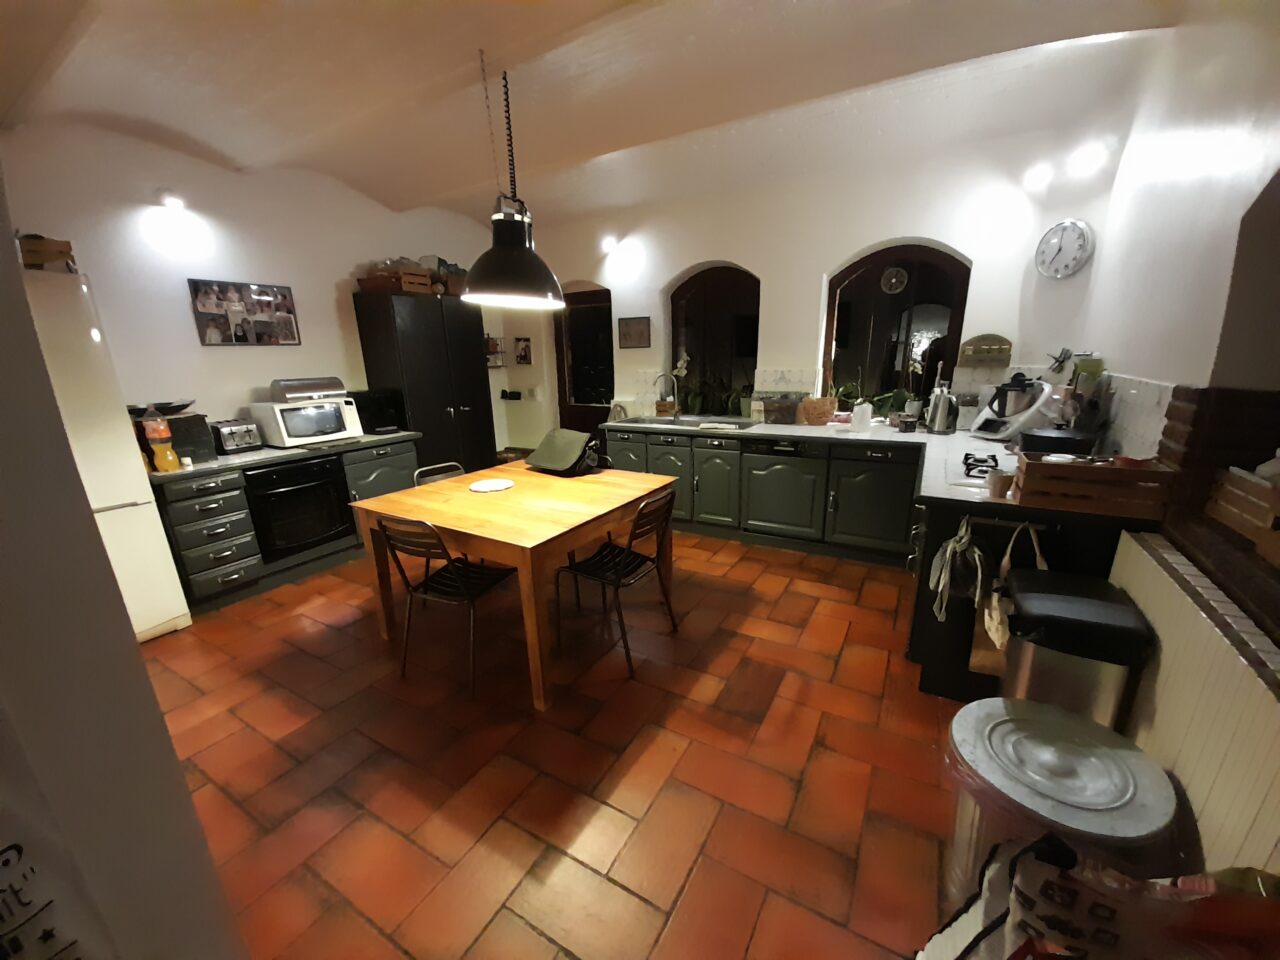 Rénovation de cuisine à Roubaix (59)